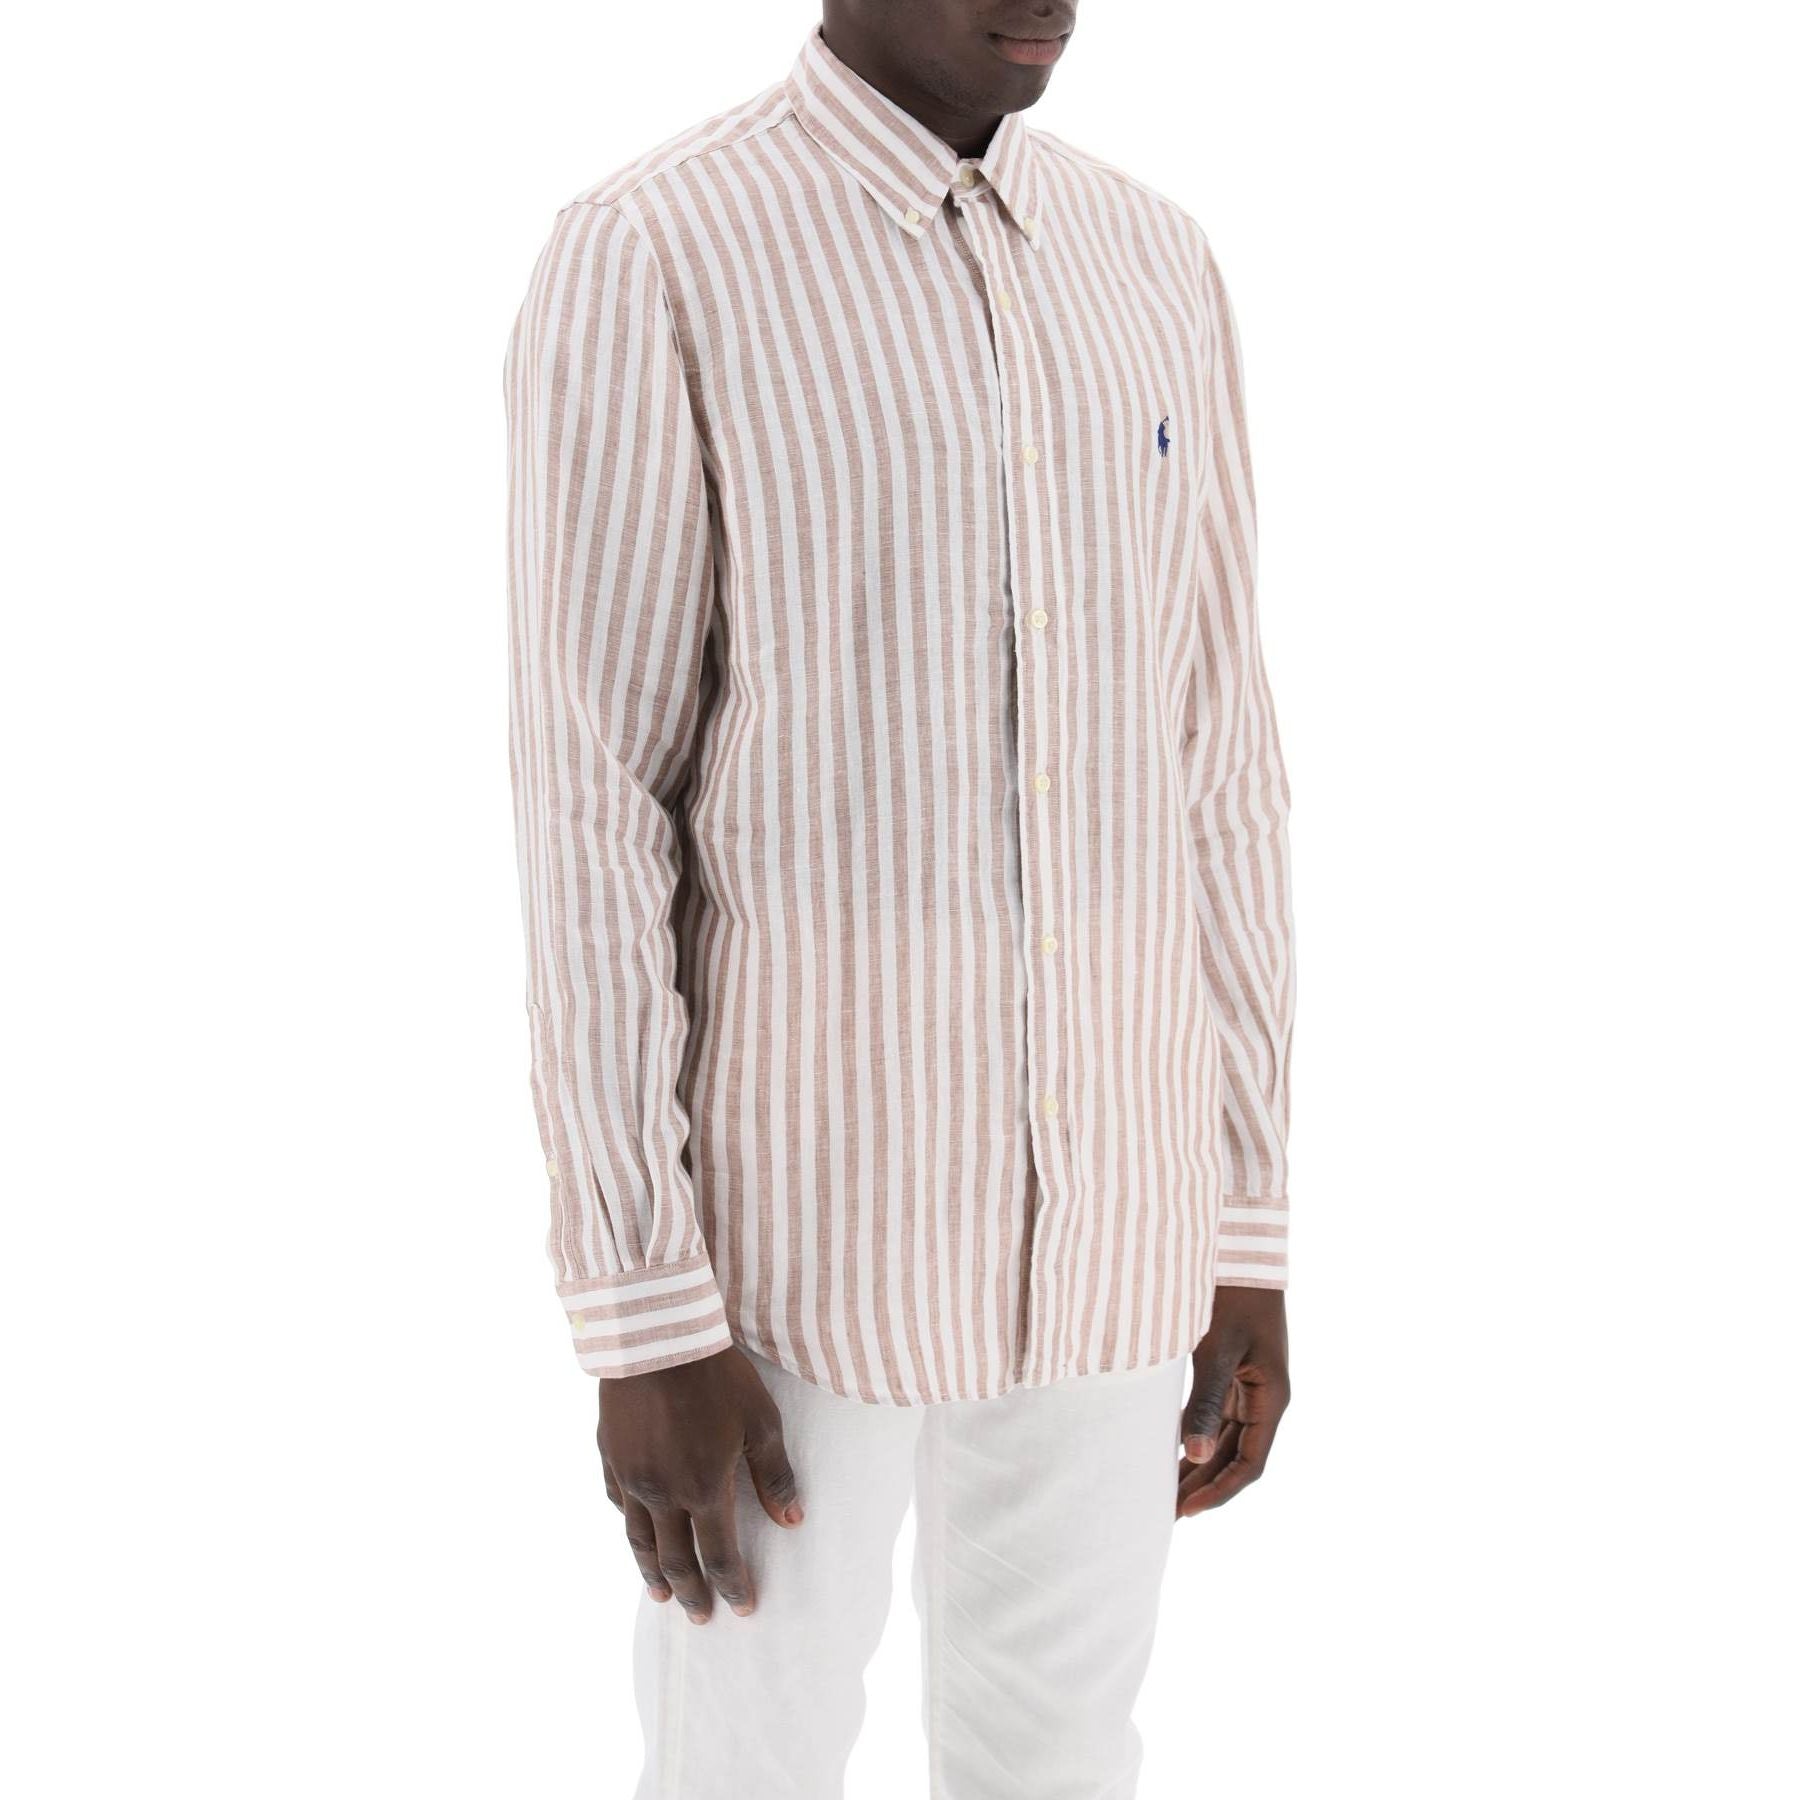 White and Khaki Striped Custom-Fit Linen Shirt